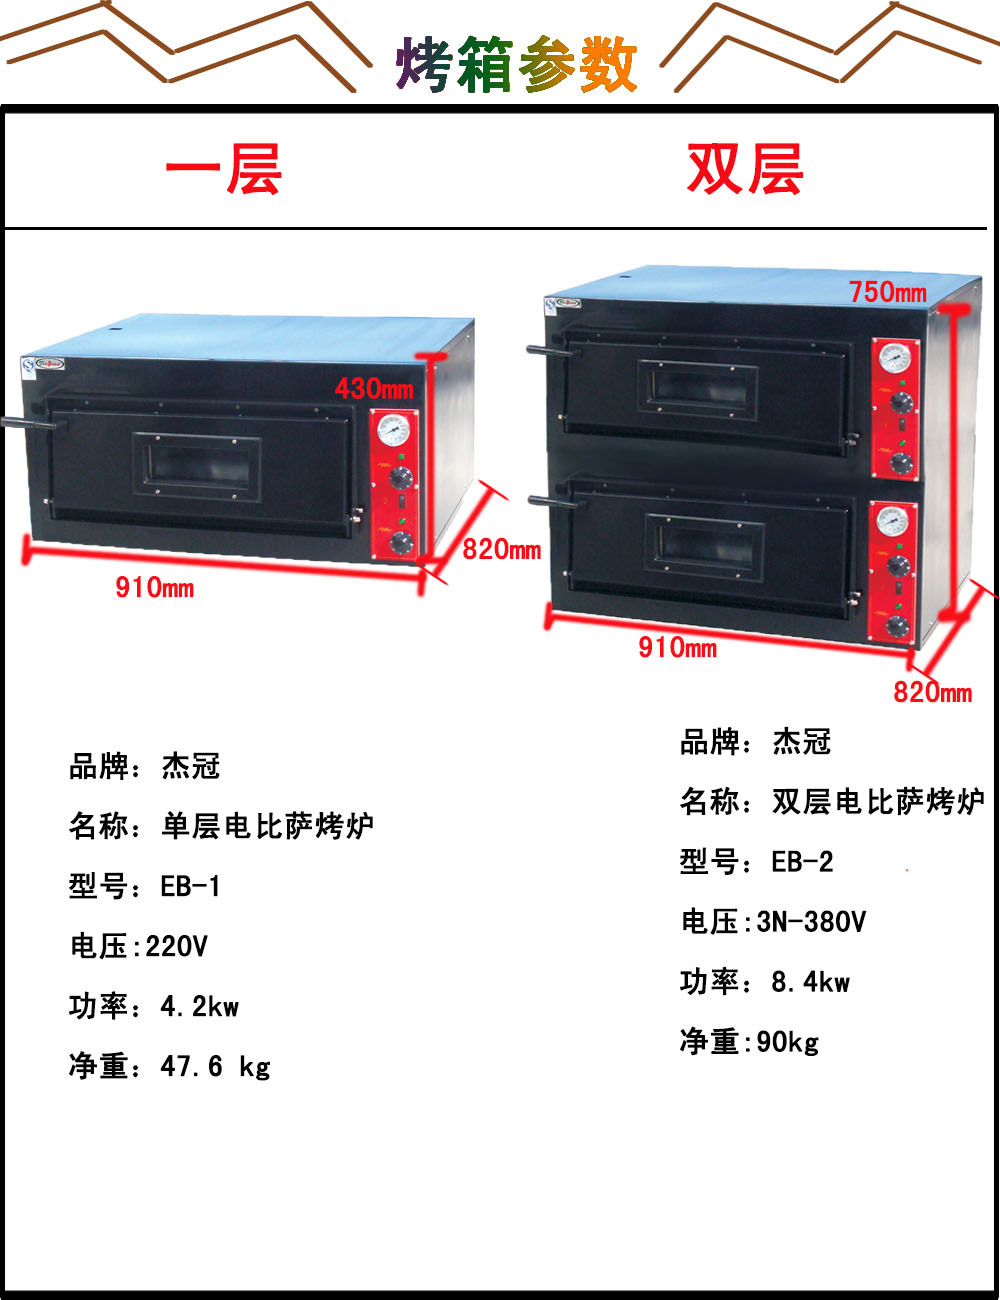 杰冠EB-2双层电比萨烤炉 比萨烤箱 电烤箱 比萨烤炉 陂萨烤箱示例图6